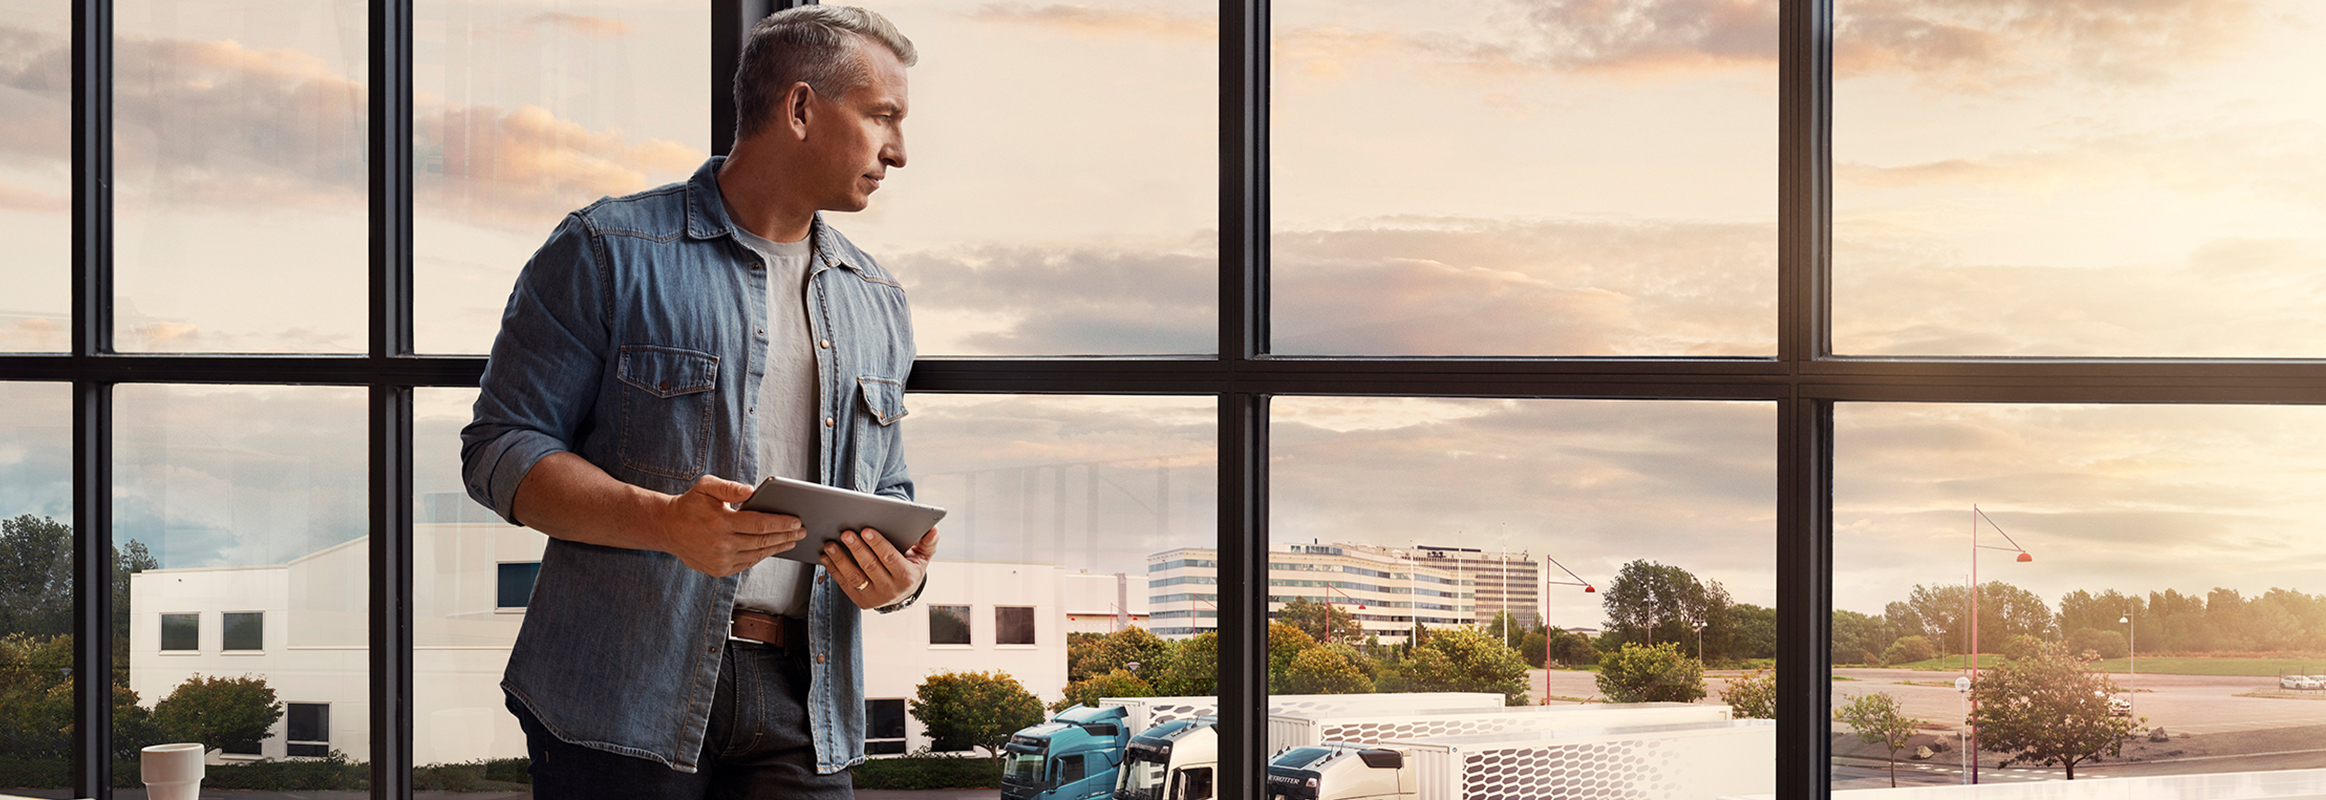 Un bărbat care ține în mână o tabletă stă lângă o fereastră și privește în jos spre flota de autocamioane